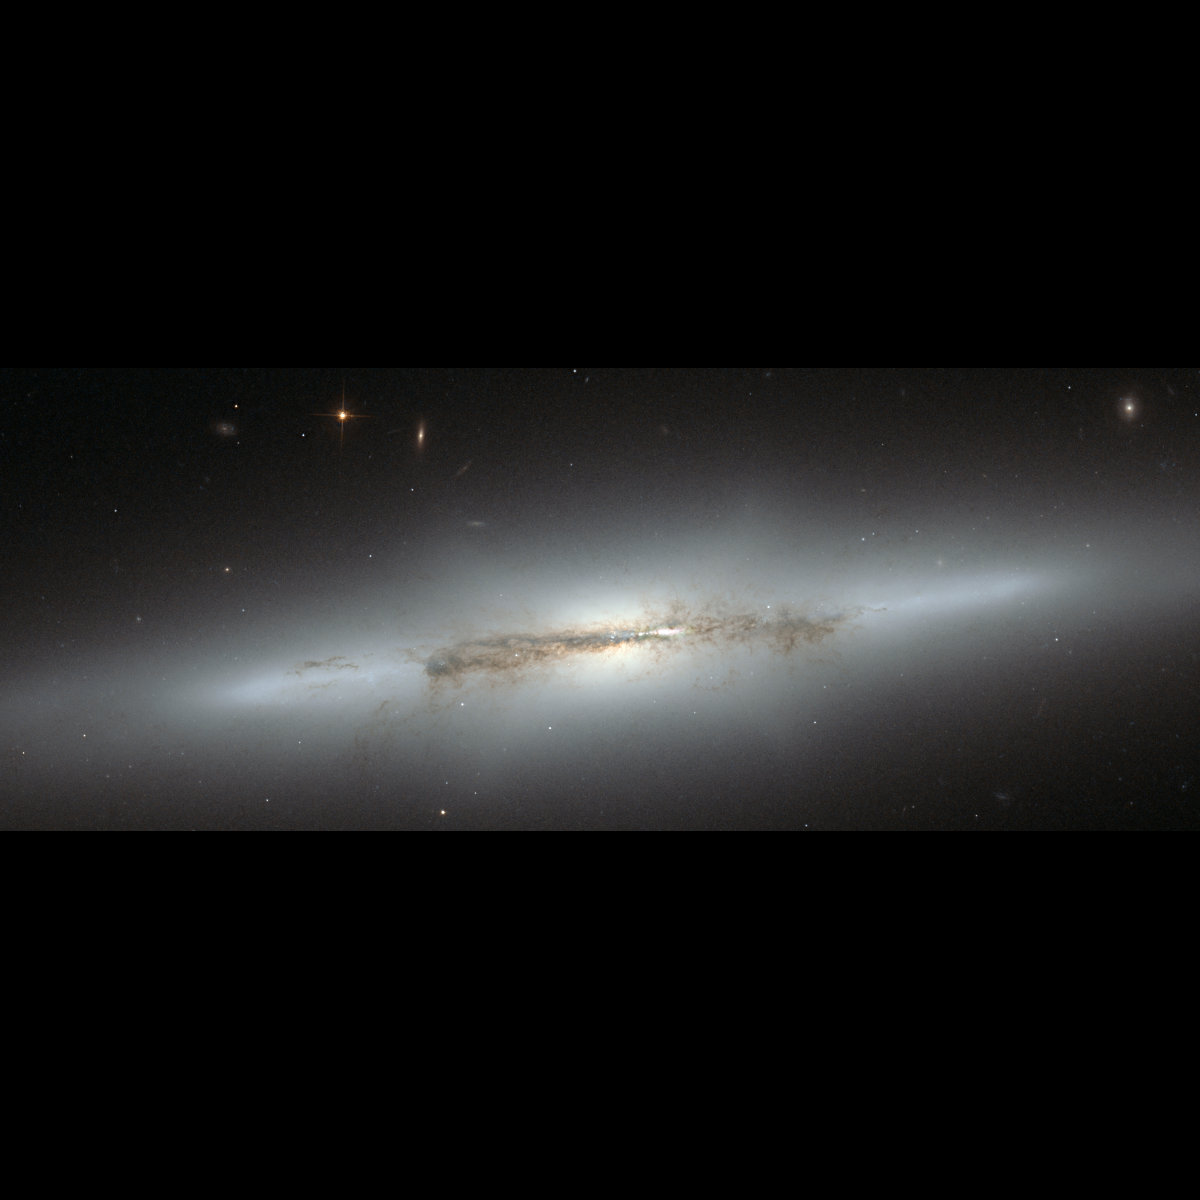 ぼんやり輝く X が特徴的な渦巻銀河ngc 4710 アストロピクス